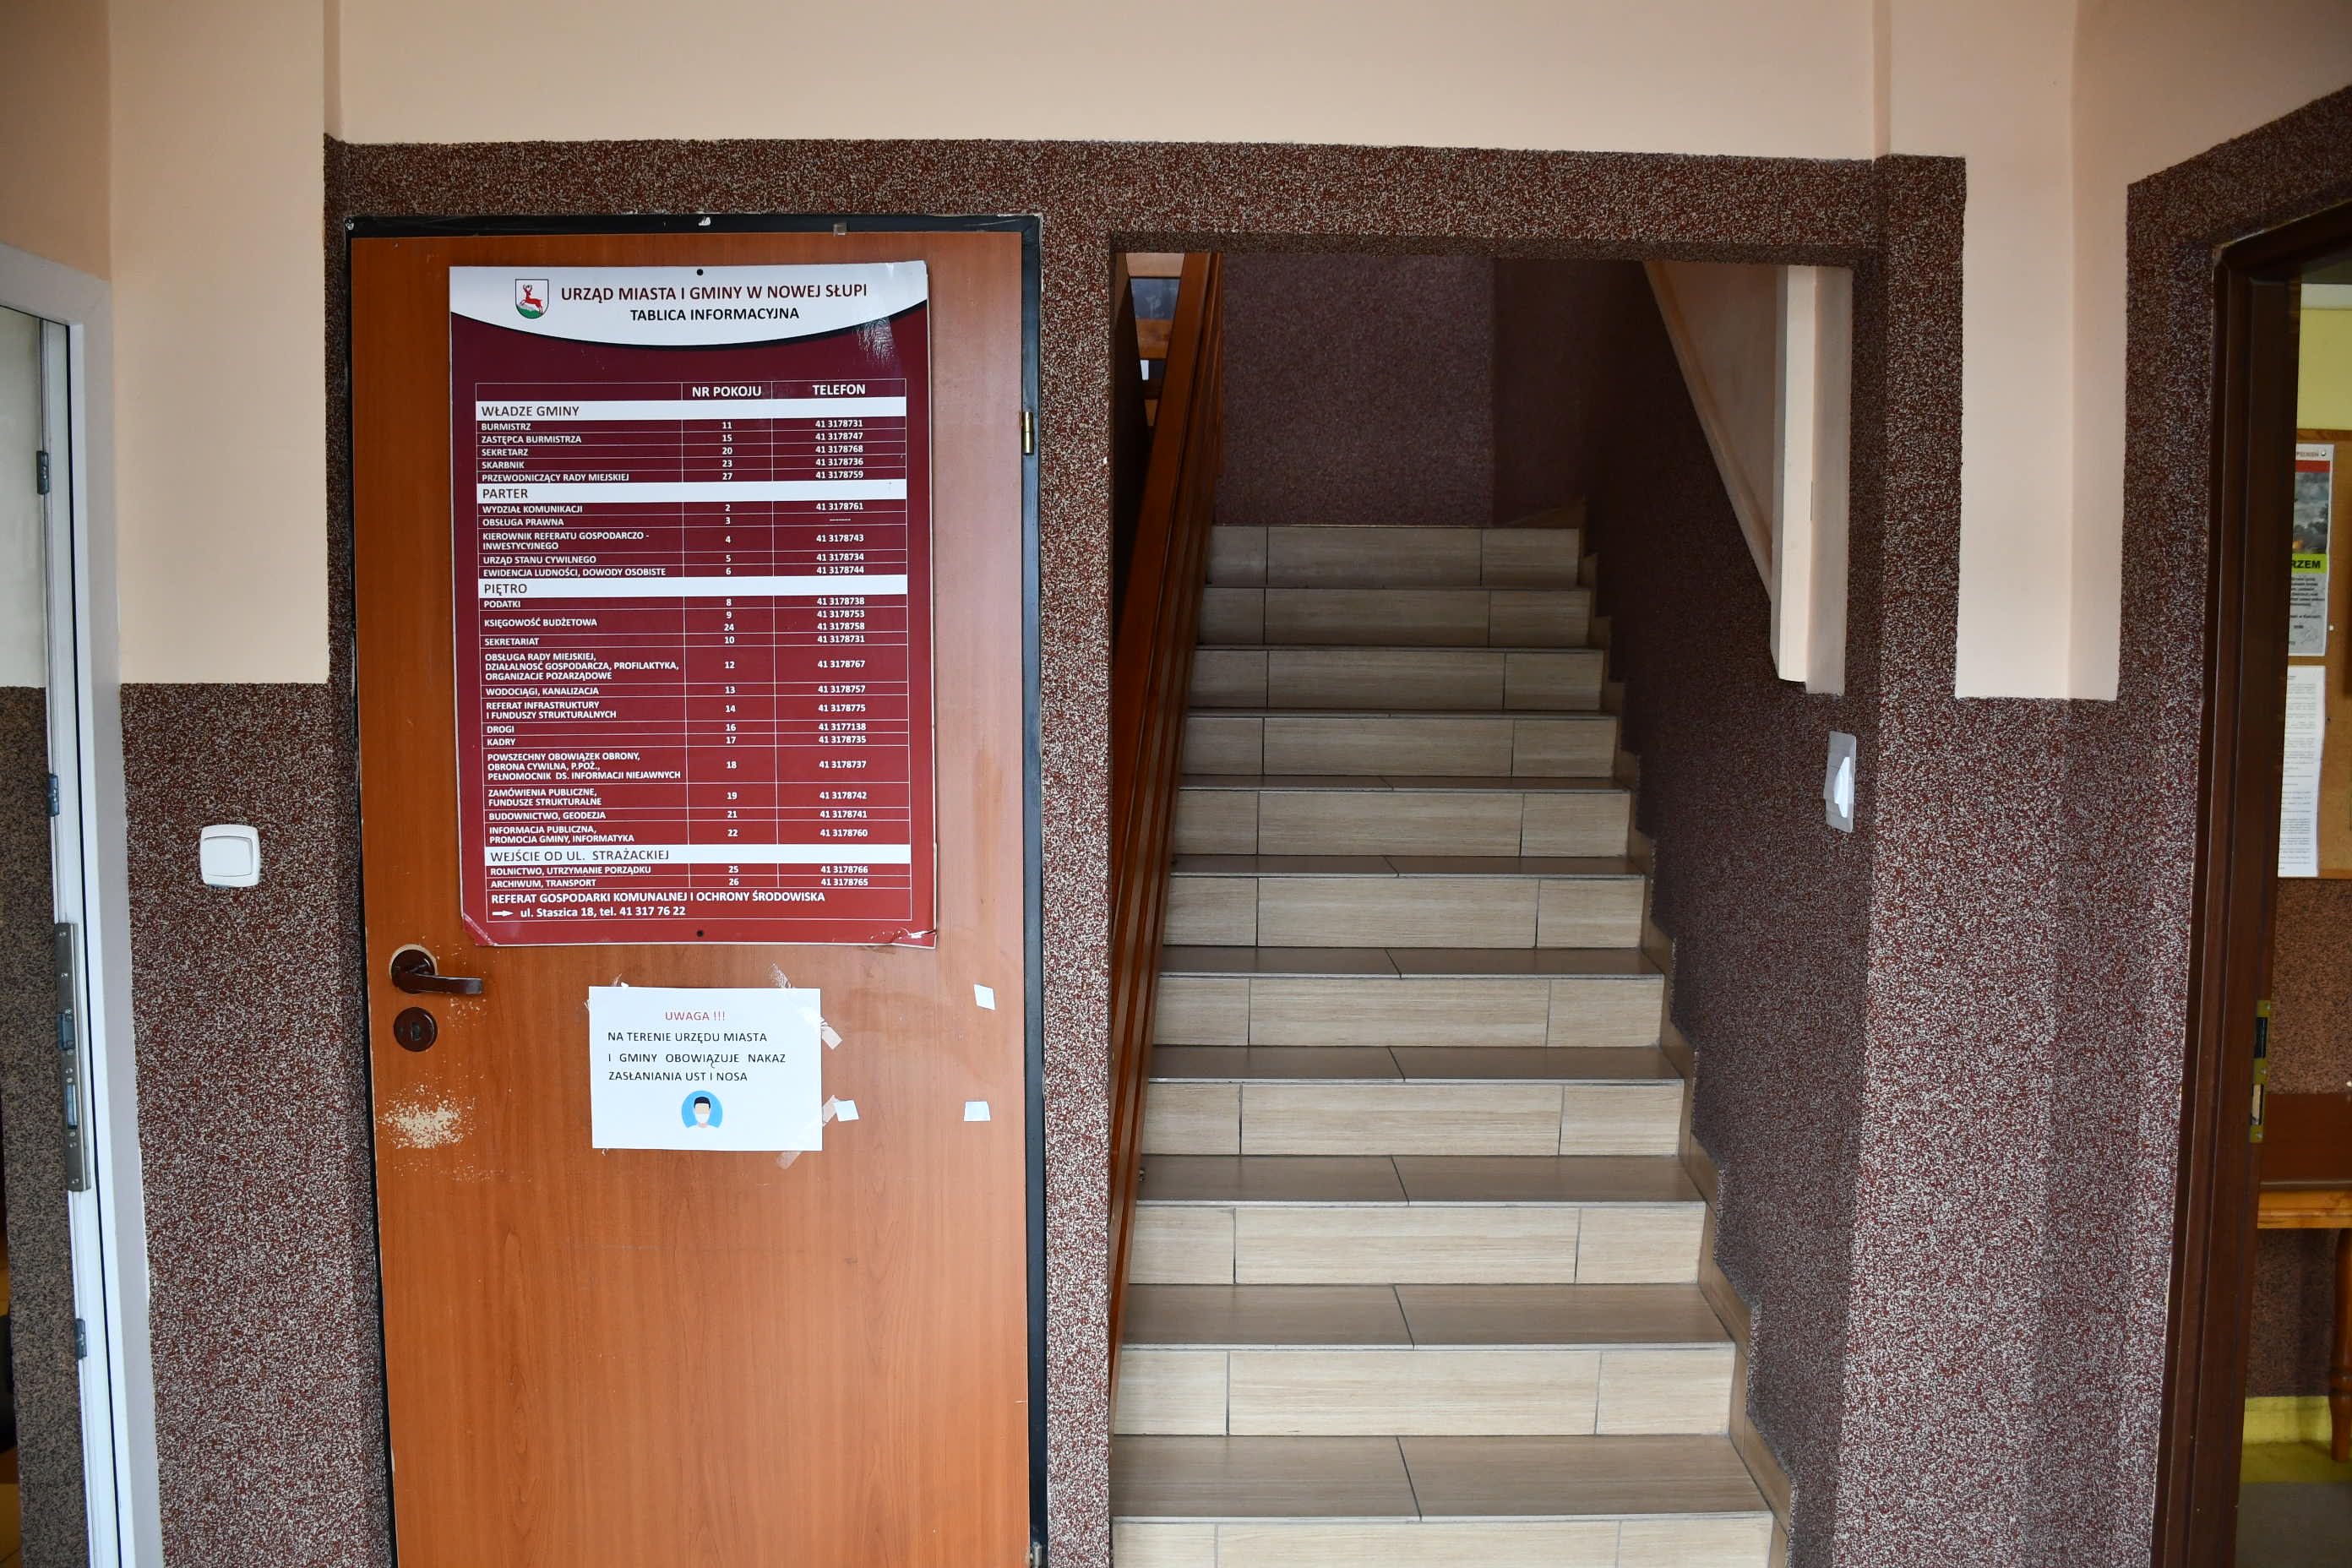 Schody prowadzące od wejscia do góry w stronę sekretariatu